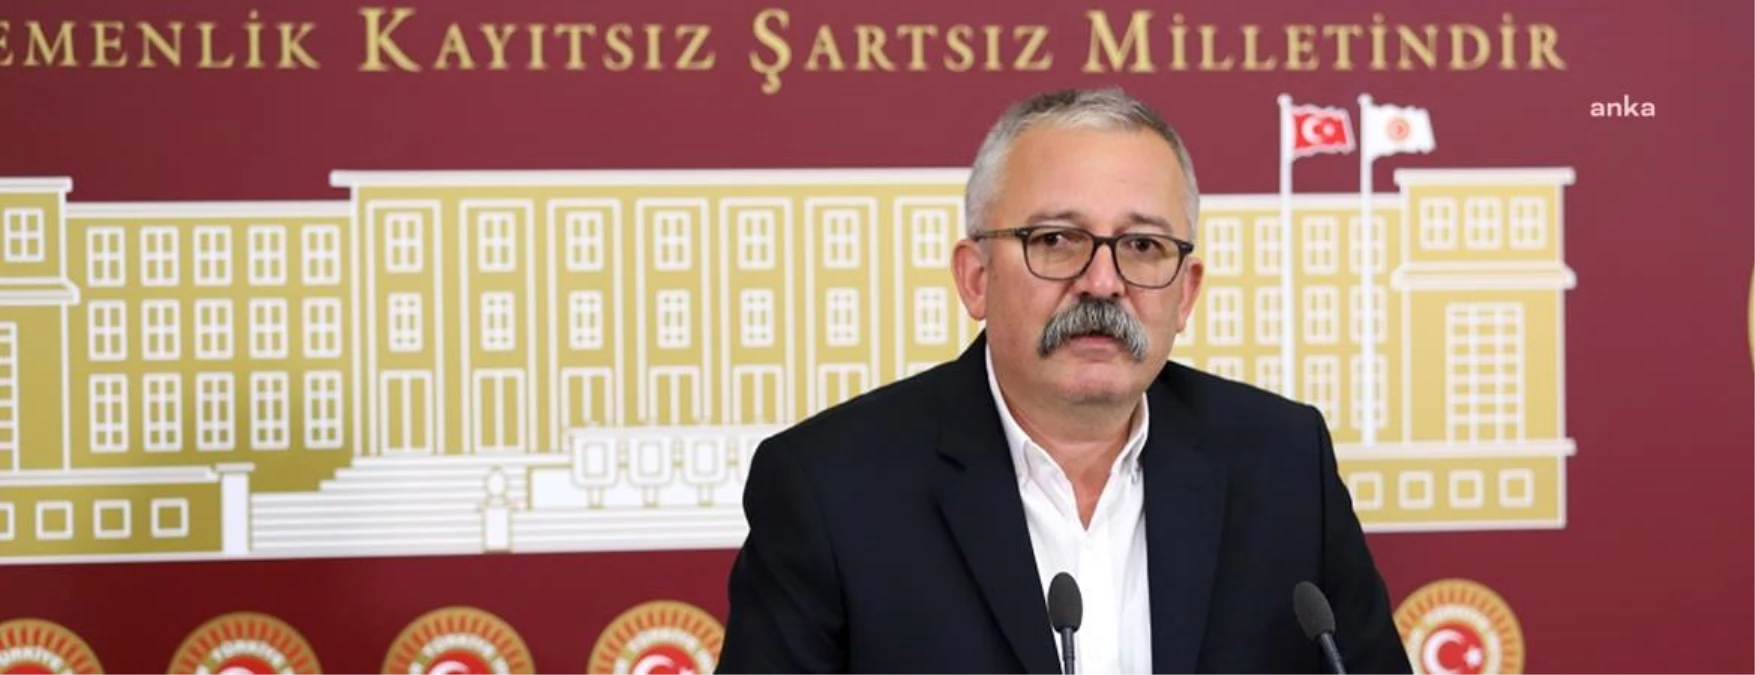 Rıdvan Turan: "Çiftçi, AKP Eliyle Tarla Bekçisine, Hayvan Bakıcısına Dönüştürüldü"